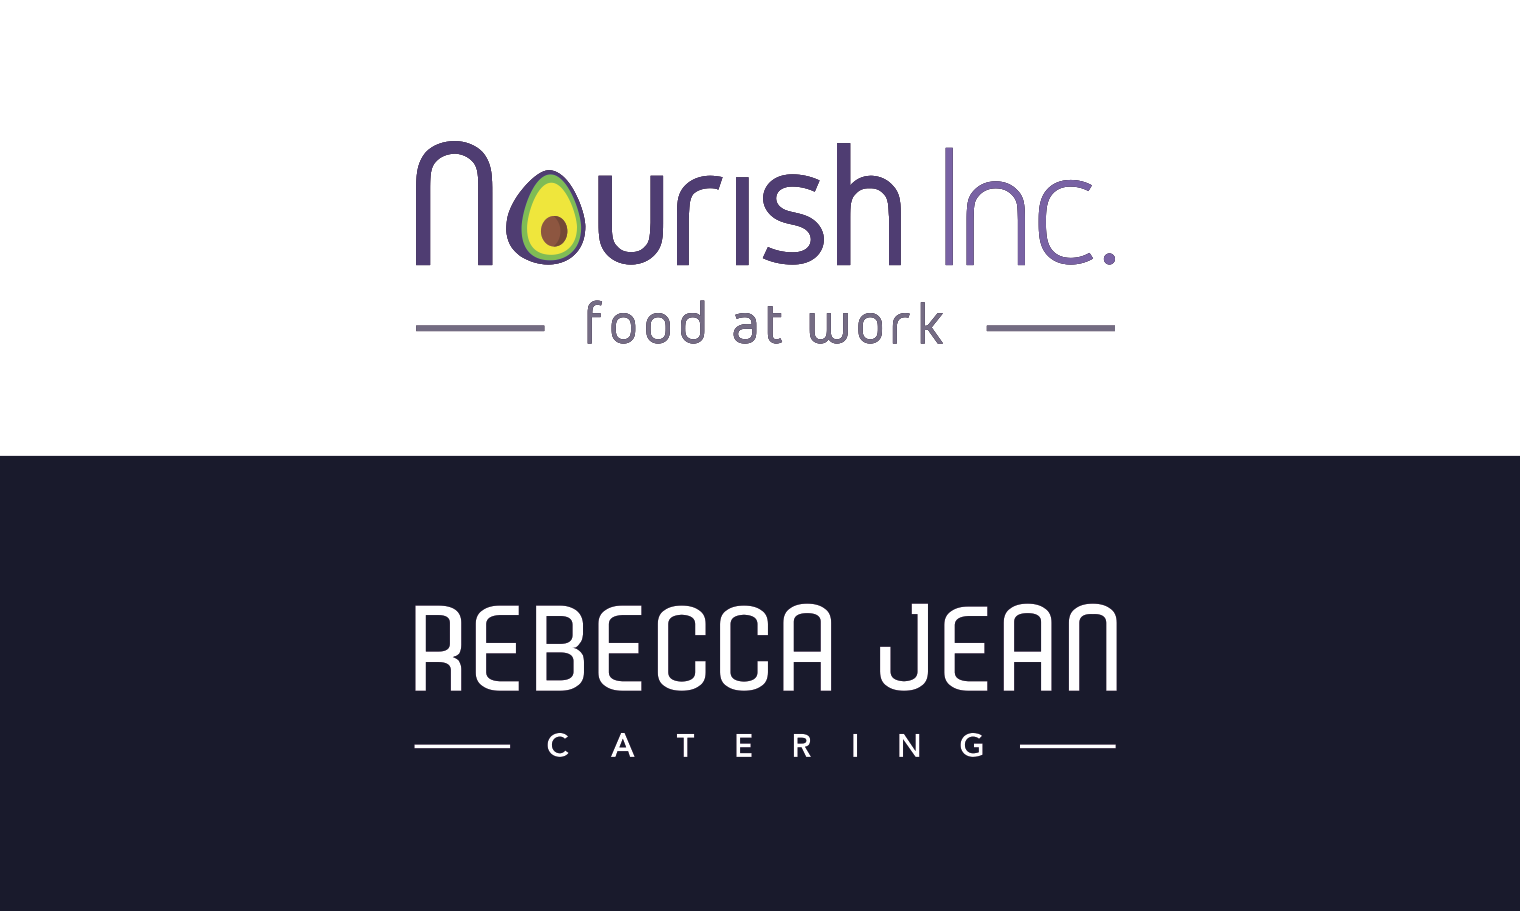 Rebecca Jean Catering Inc 